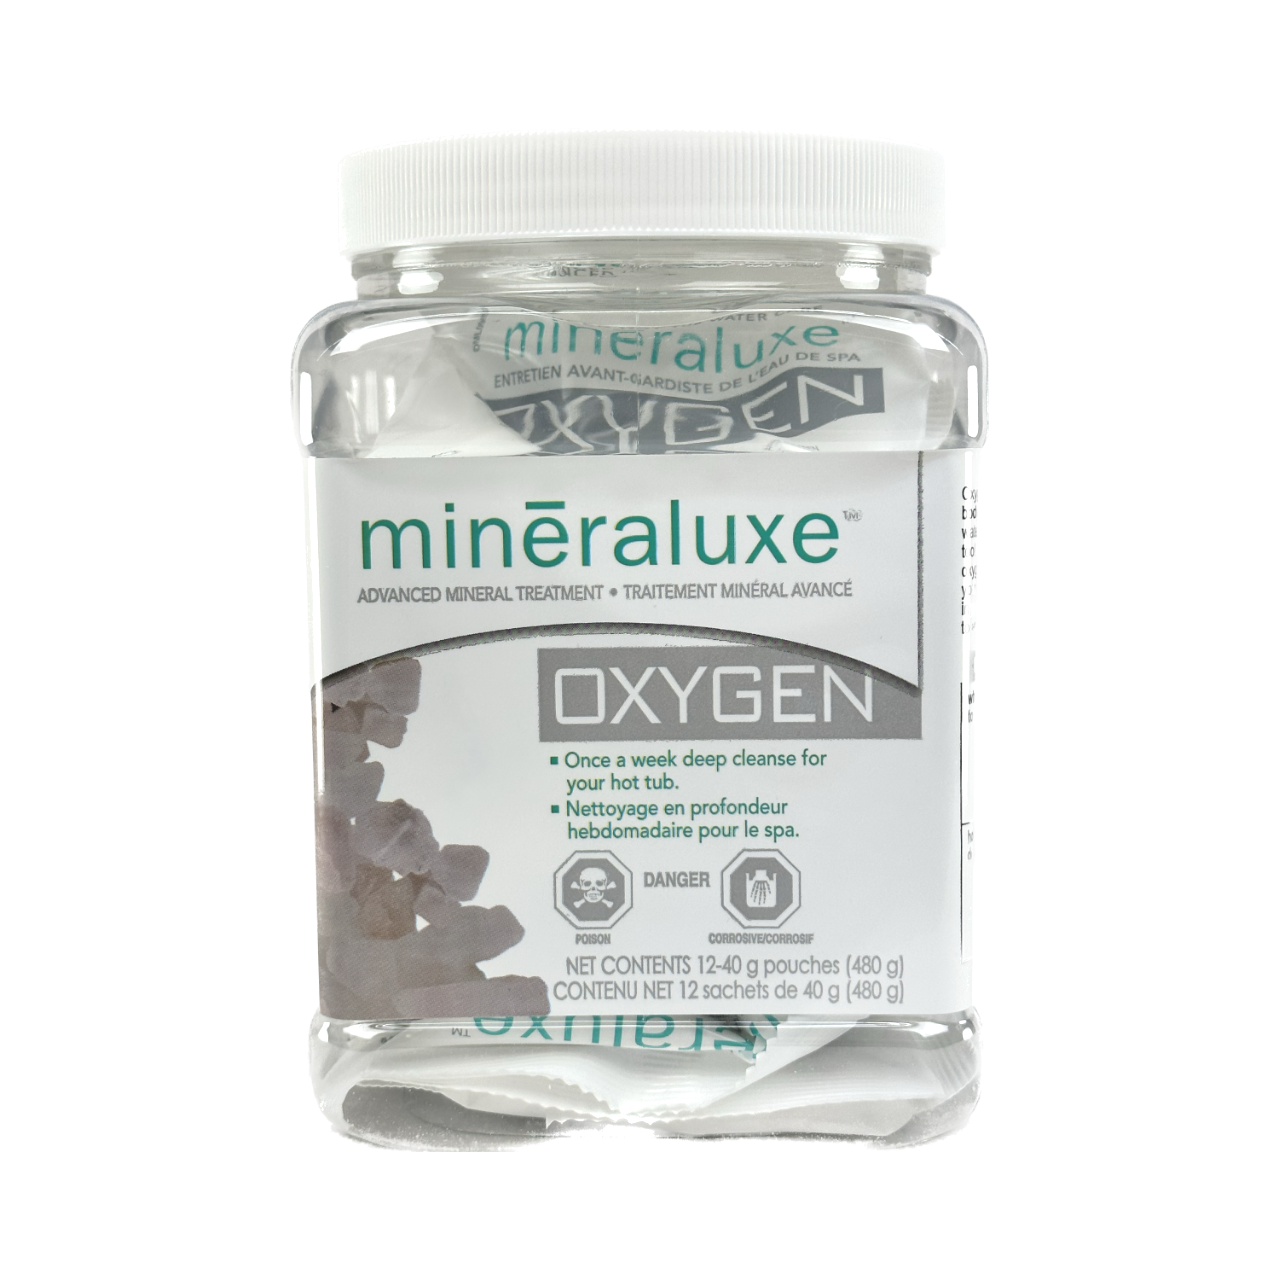 Mineraluxe™ Oxygen